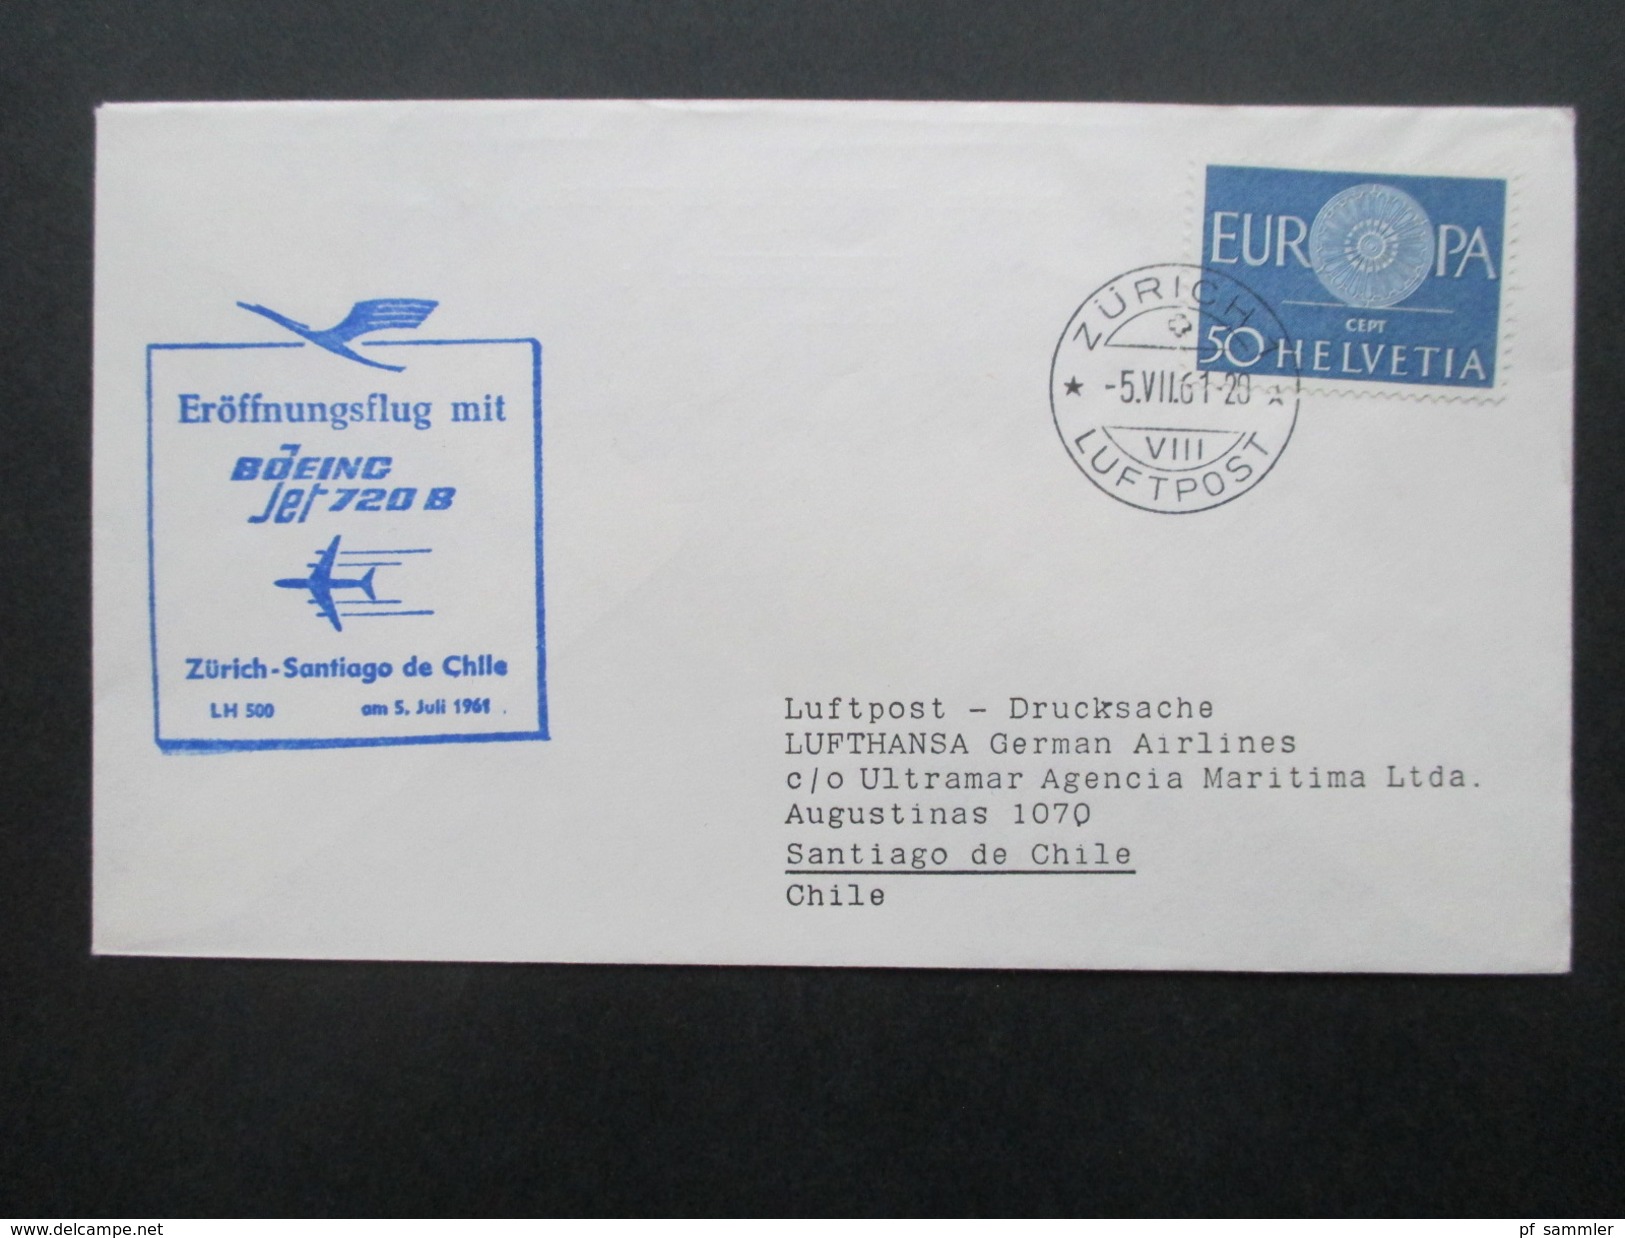 BRD / Berlin  - Europa u. Naher Osten 1. Flug / Lufthansa 40 Belege der Jahre 1957 - 1978 mit besseren!